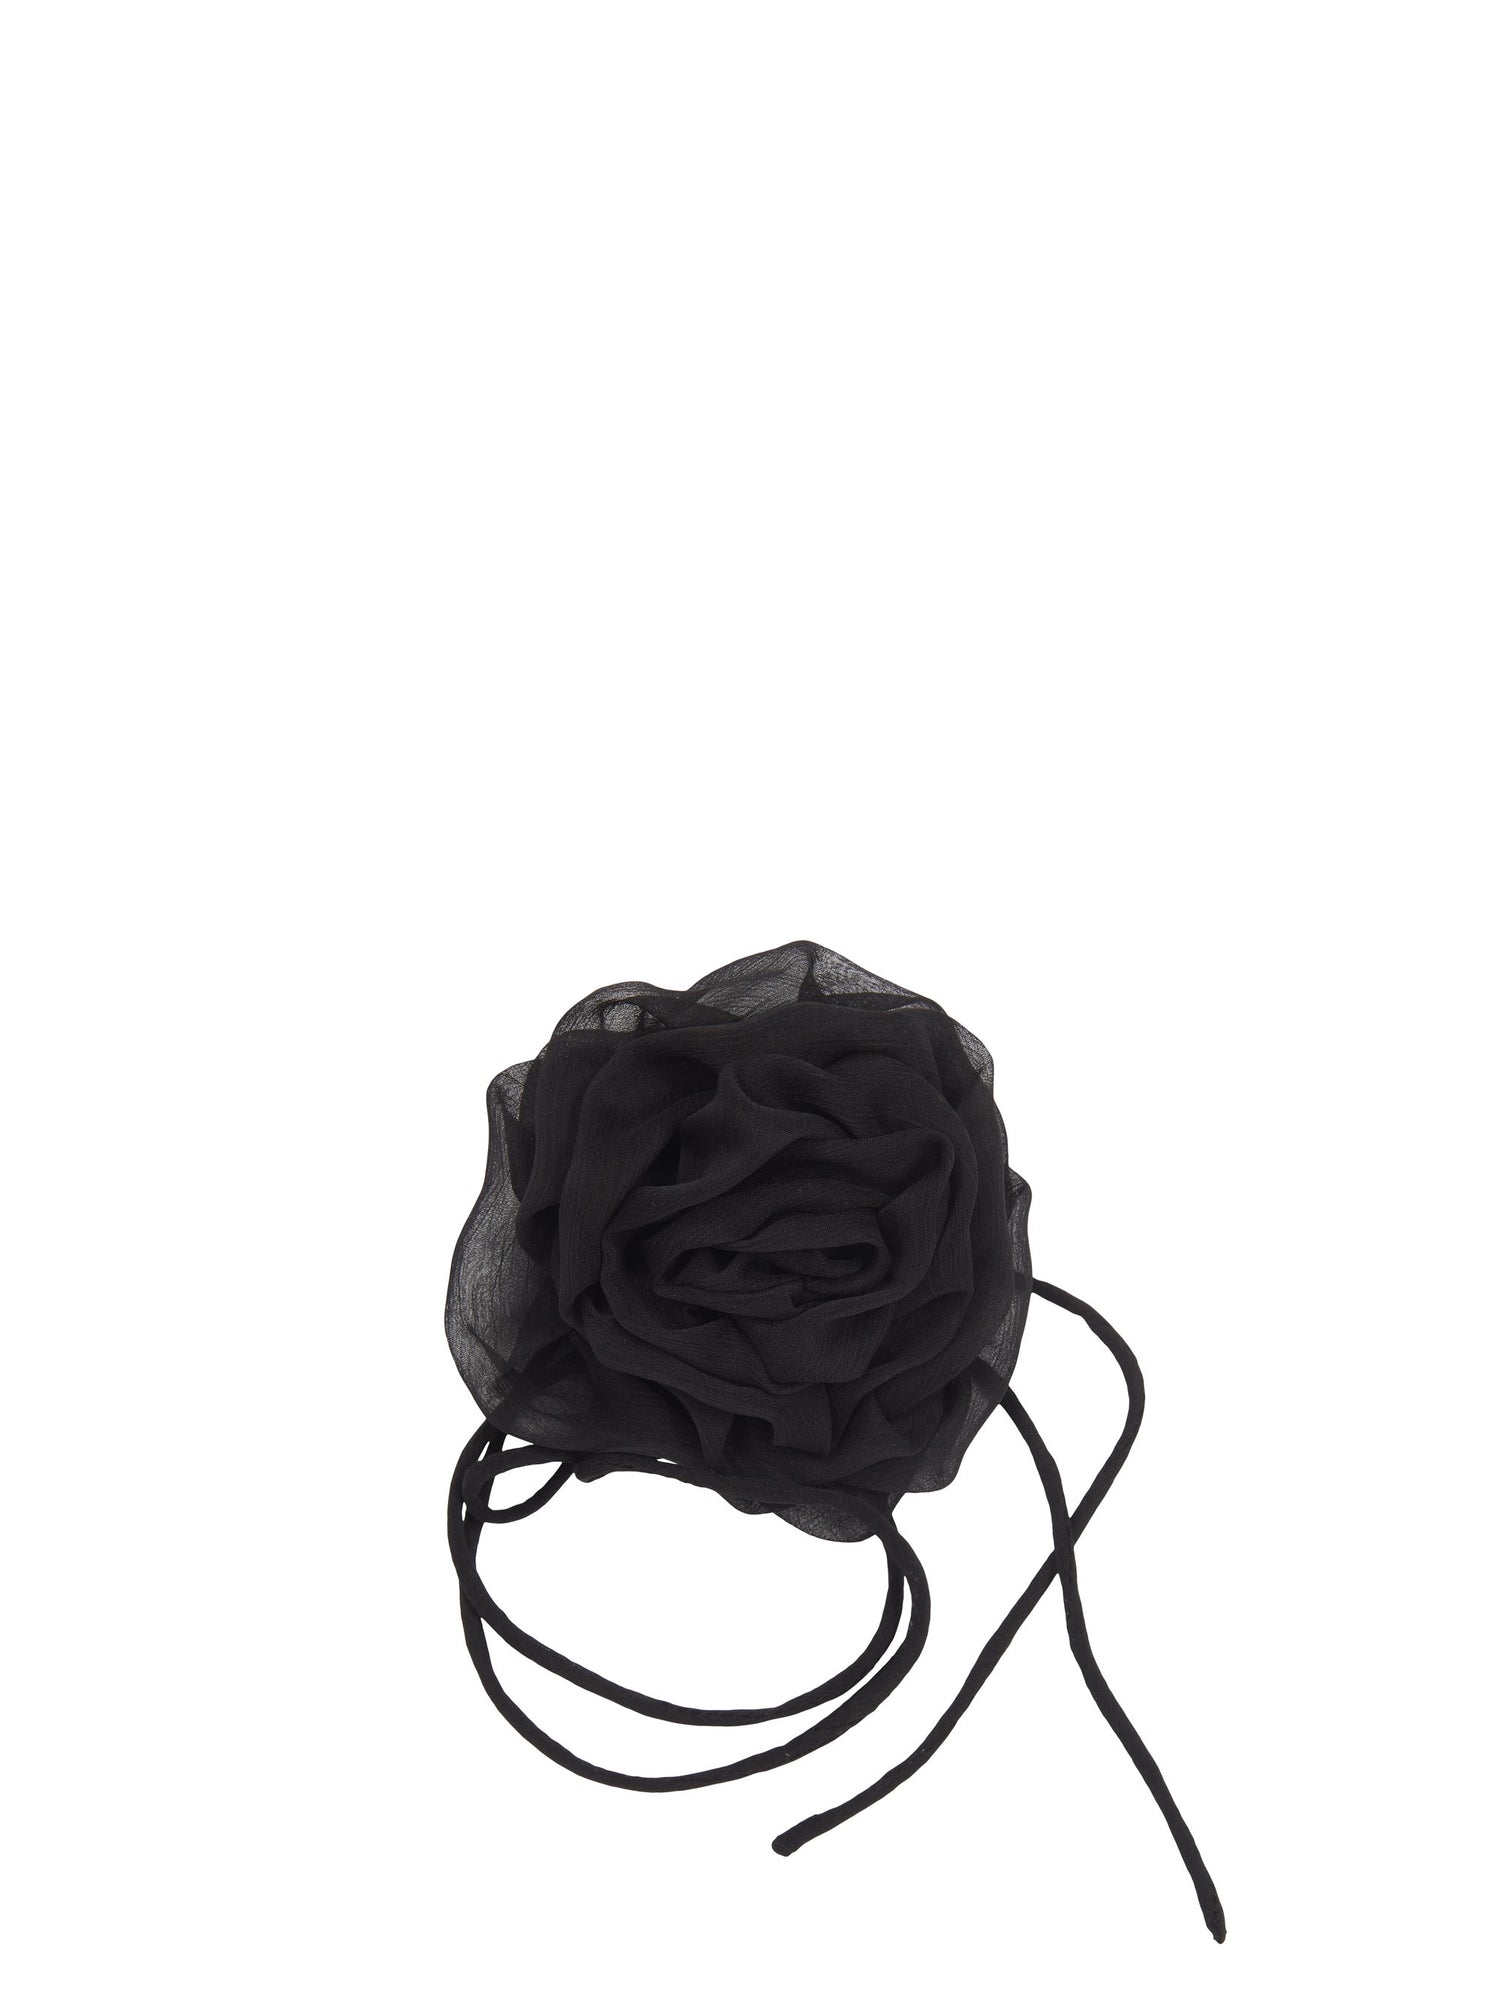 Flower string, black